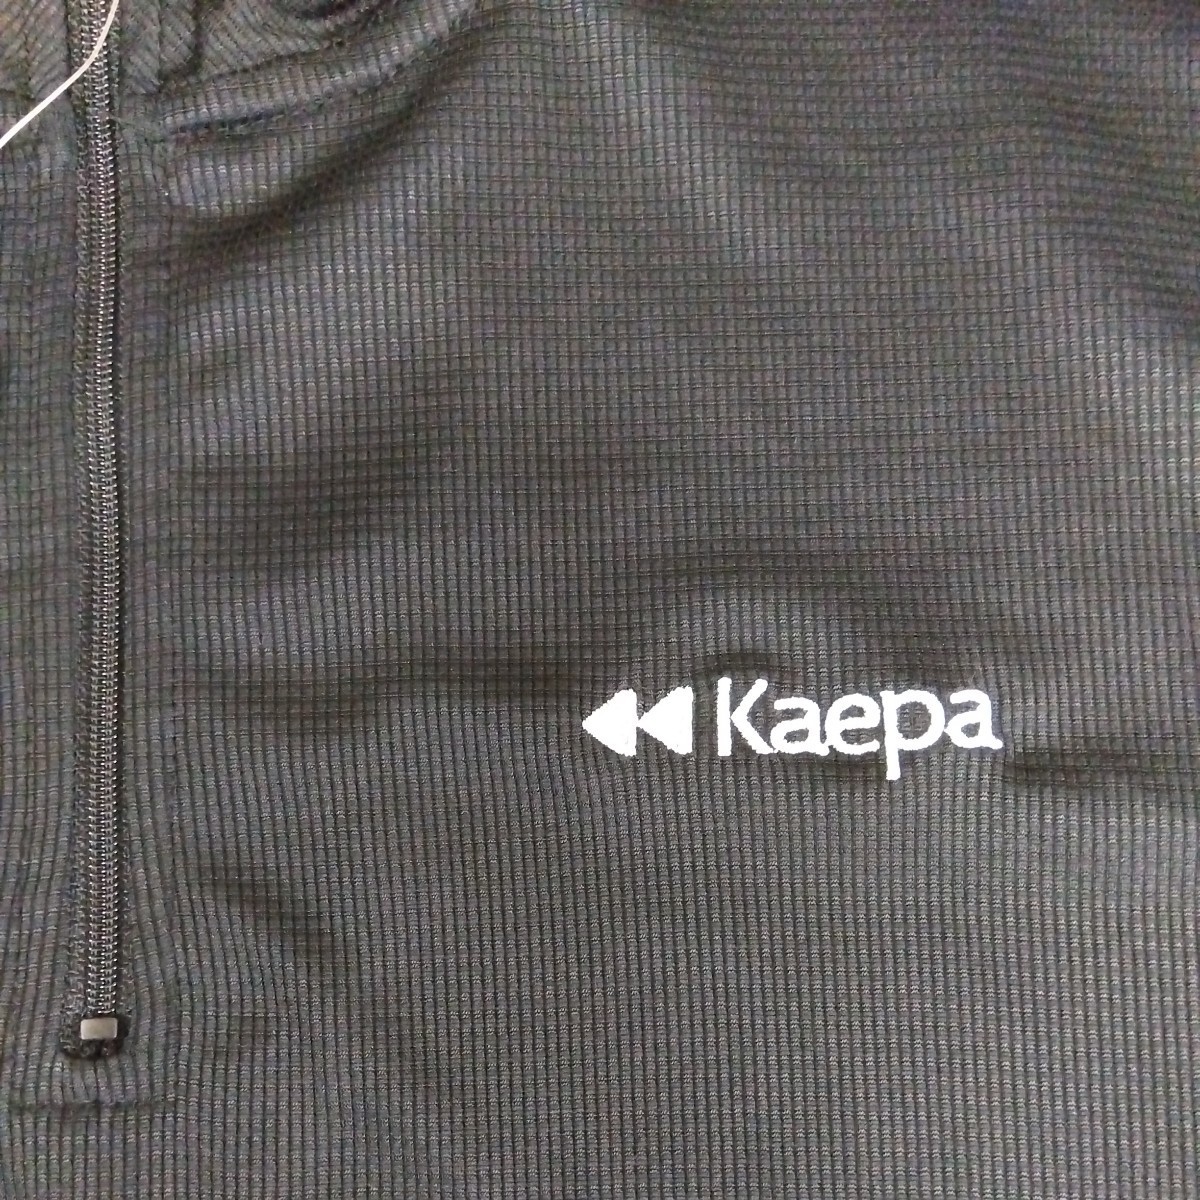 M ①Kaepa ケイパ 新品 半袖ポロシャツ 襟付きトップス ハーフジップ 黒 メンズ紳士 アウトドア スポーツ ゴルフウェア ドライ UV対策 golf